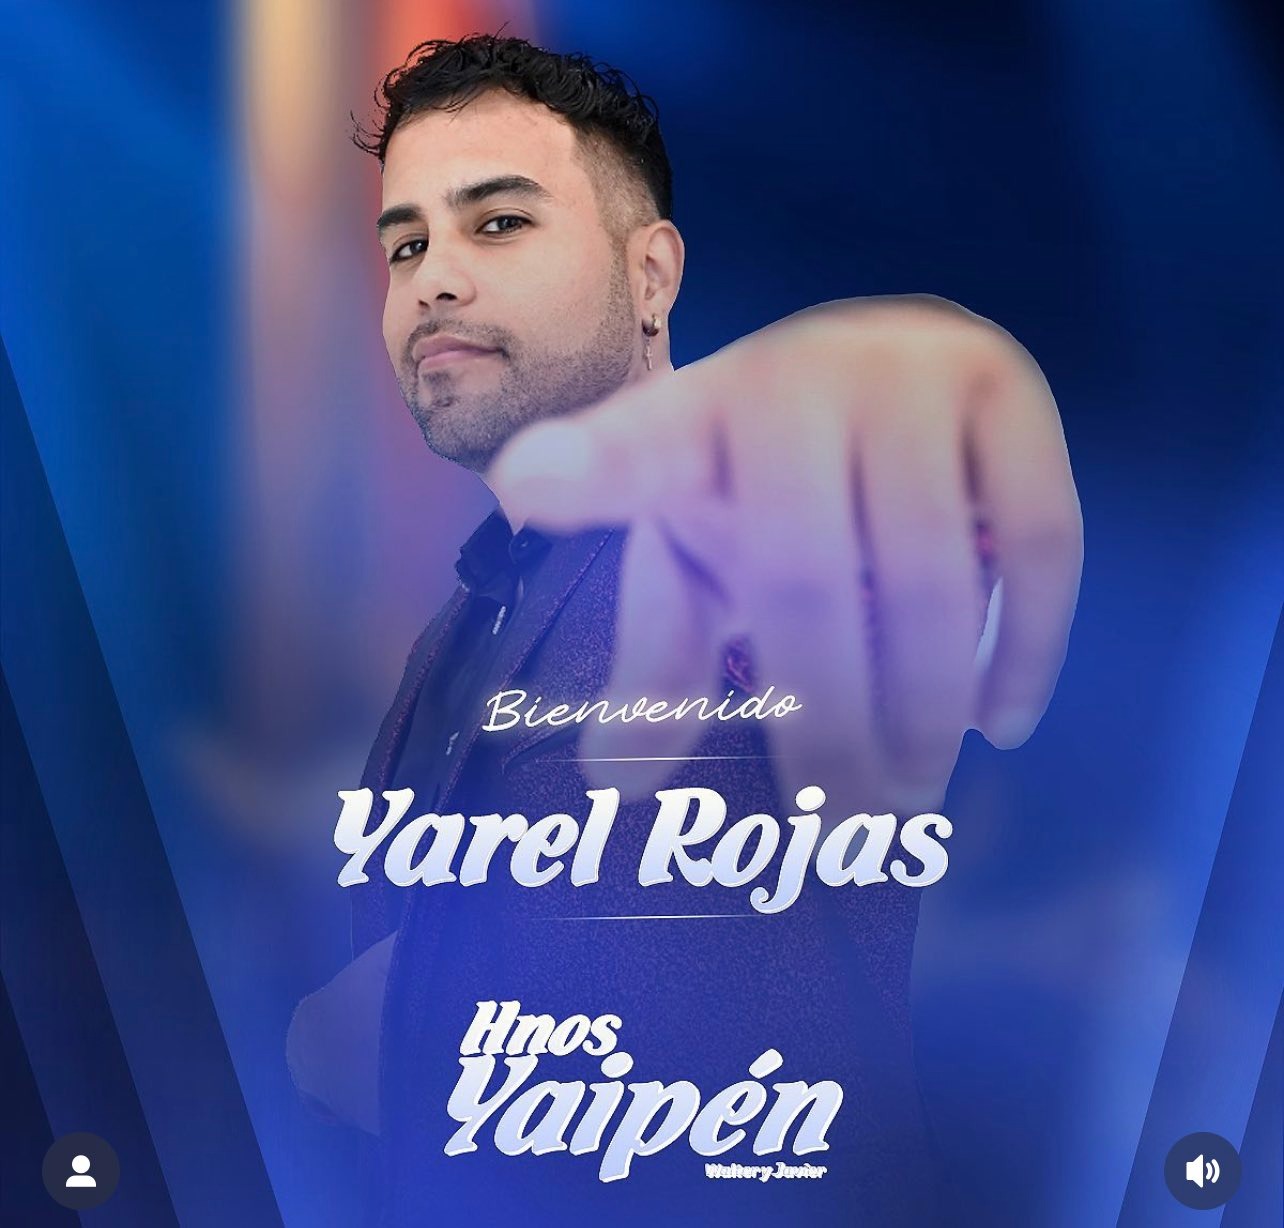 Hermanos Yaipén separa a Ysrael Rojas. Foto: Instagram